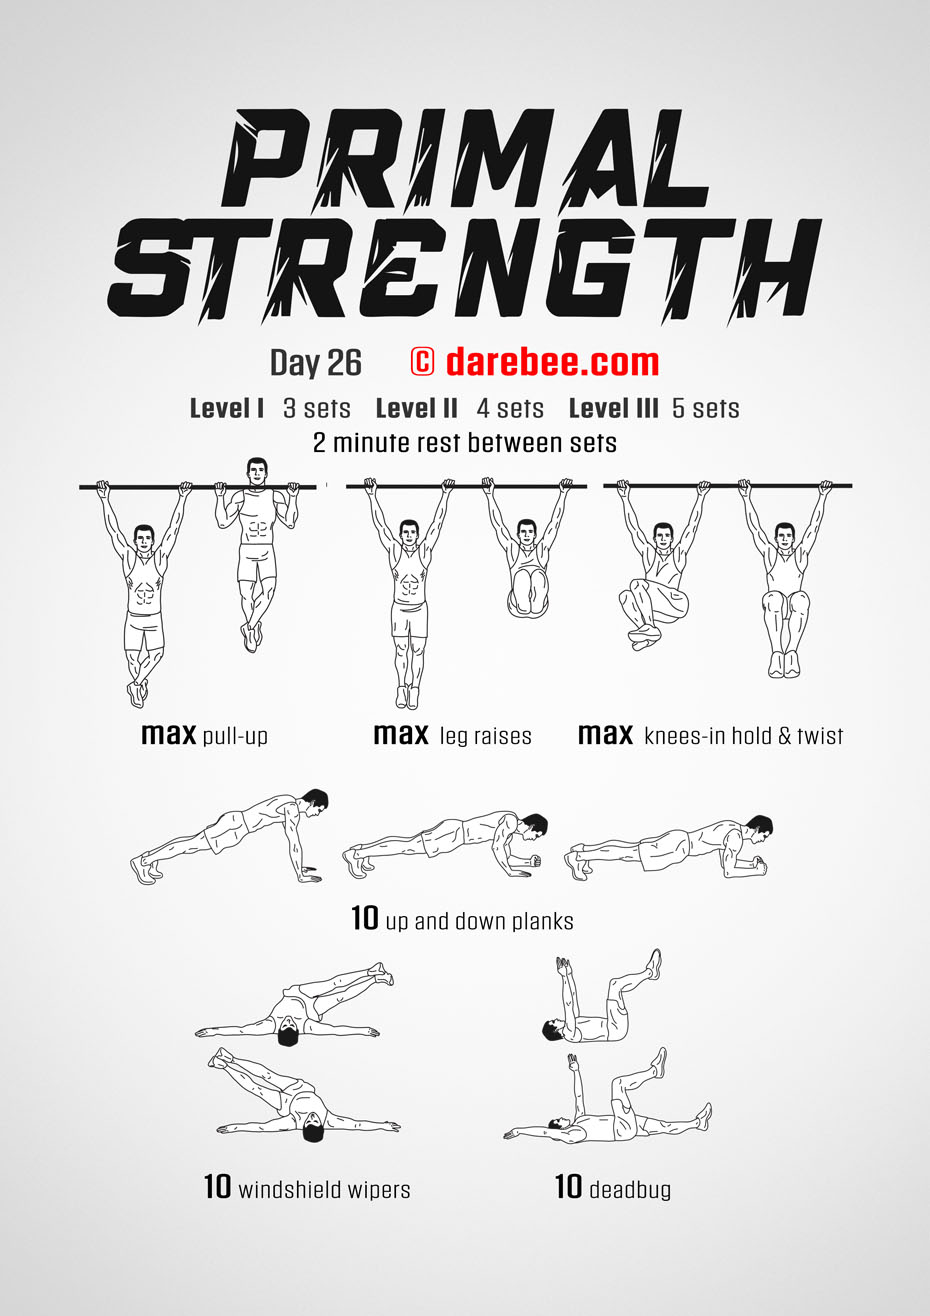 Primal Strength Program by DAREBEE